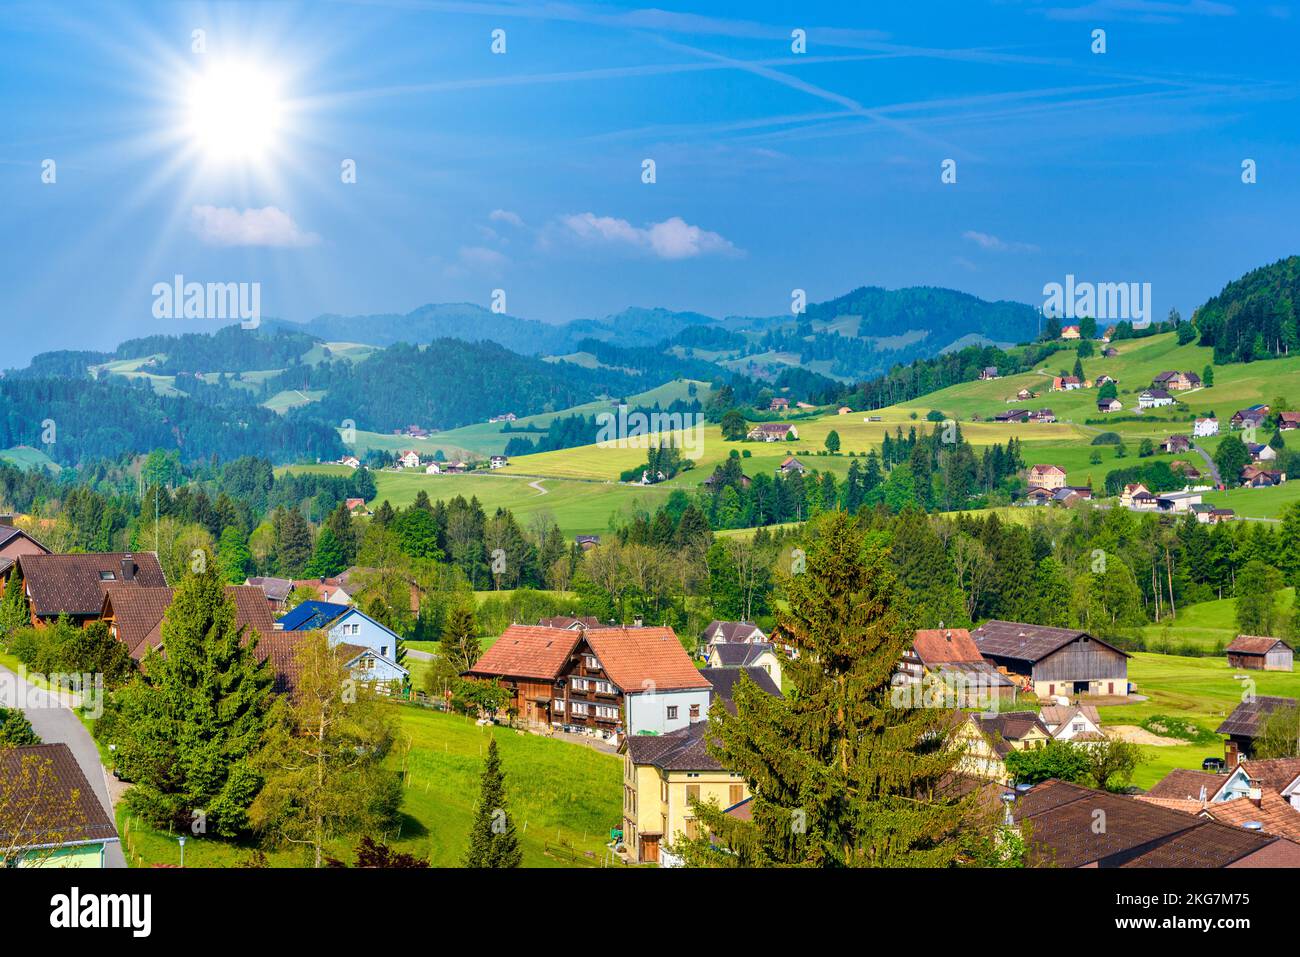 Village Schoenengrund, Hinterland Appenzell Ausserrhoden Switzerland Stock Photo